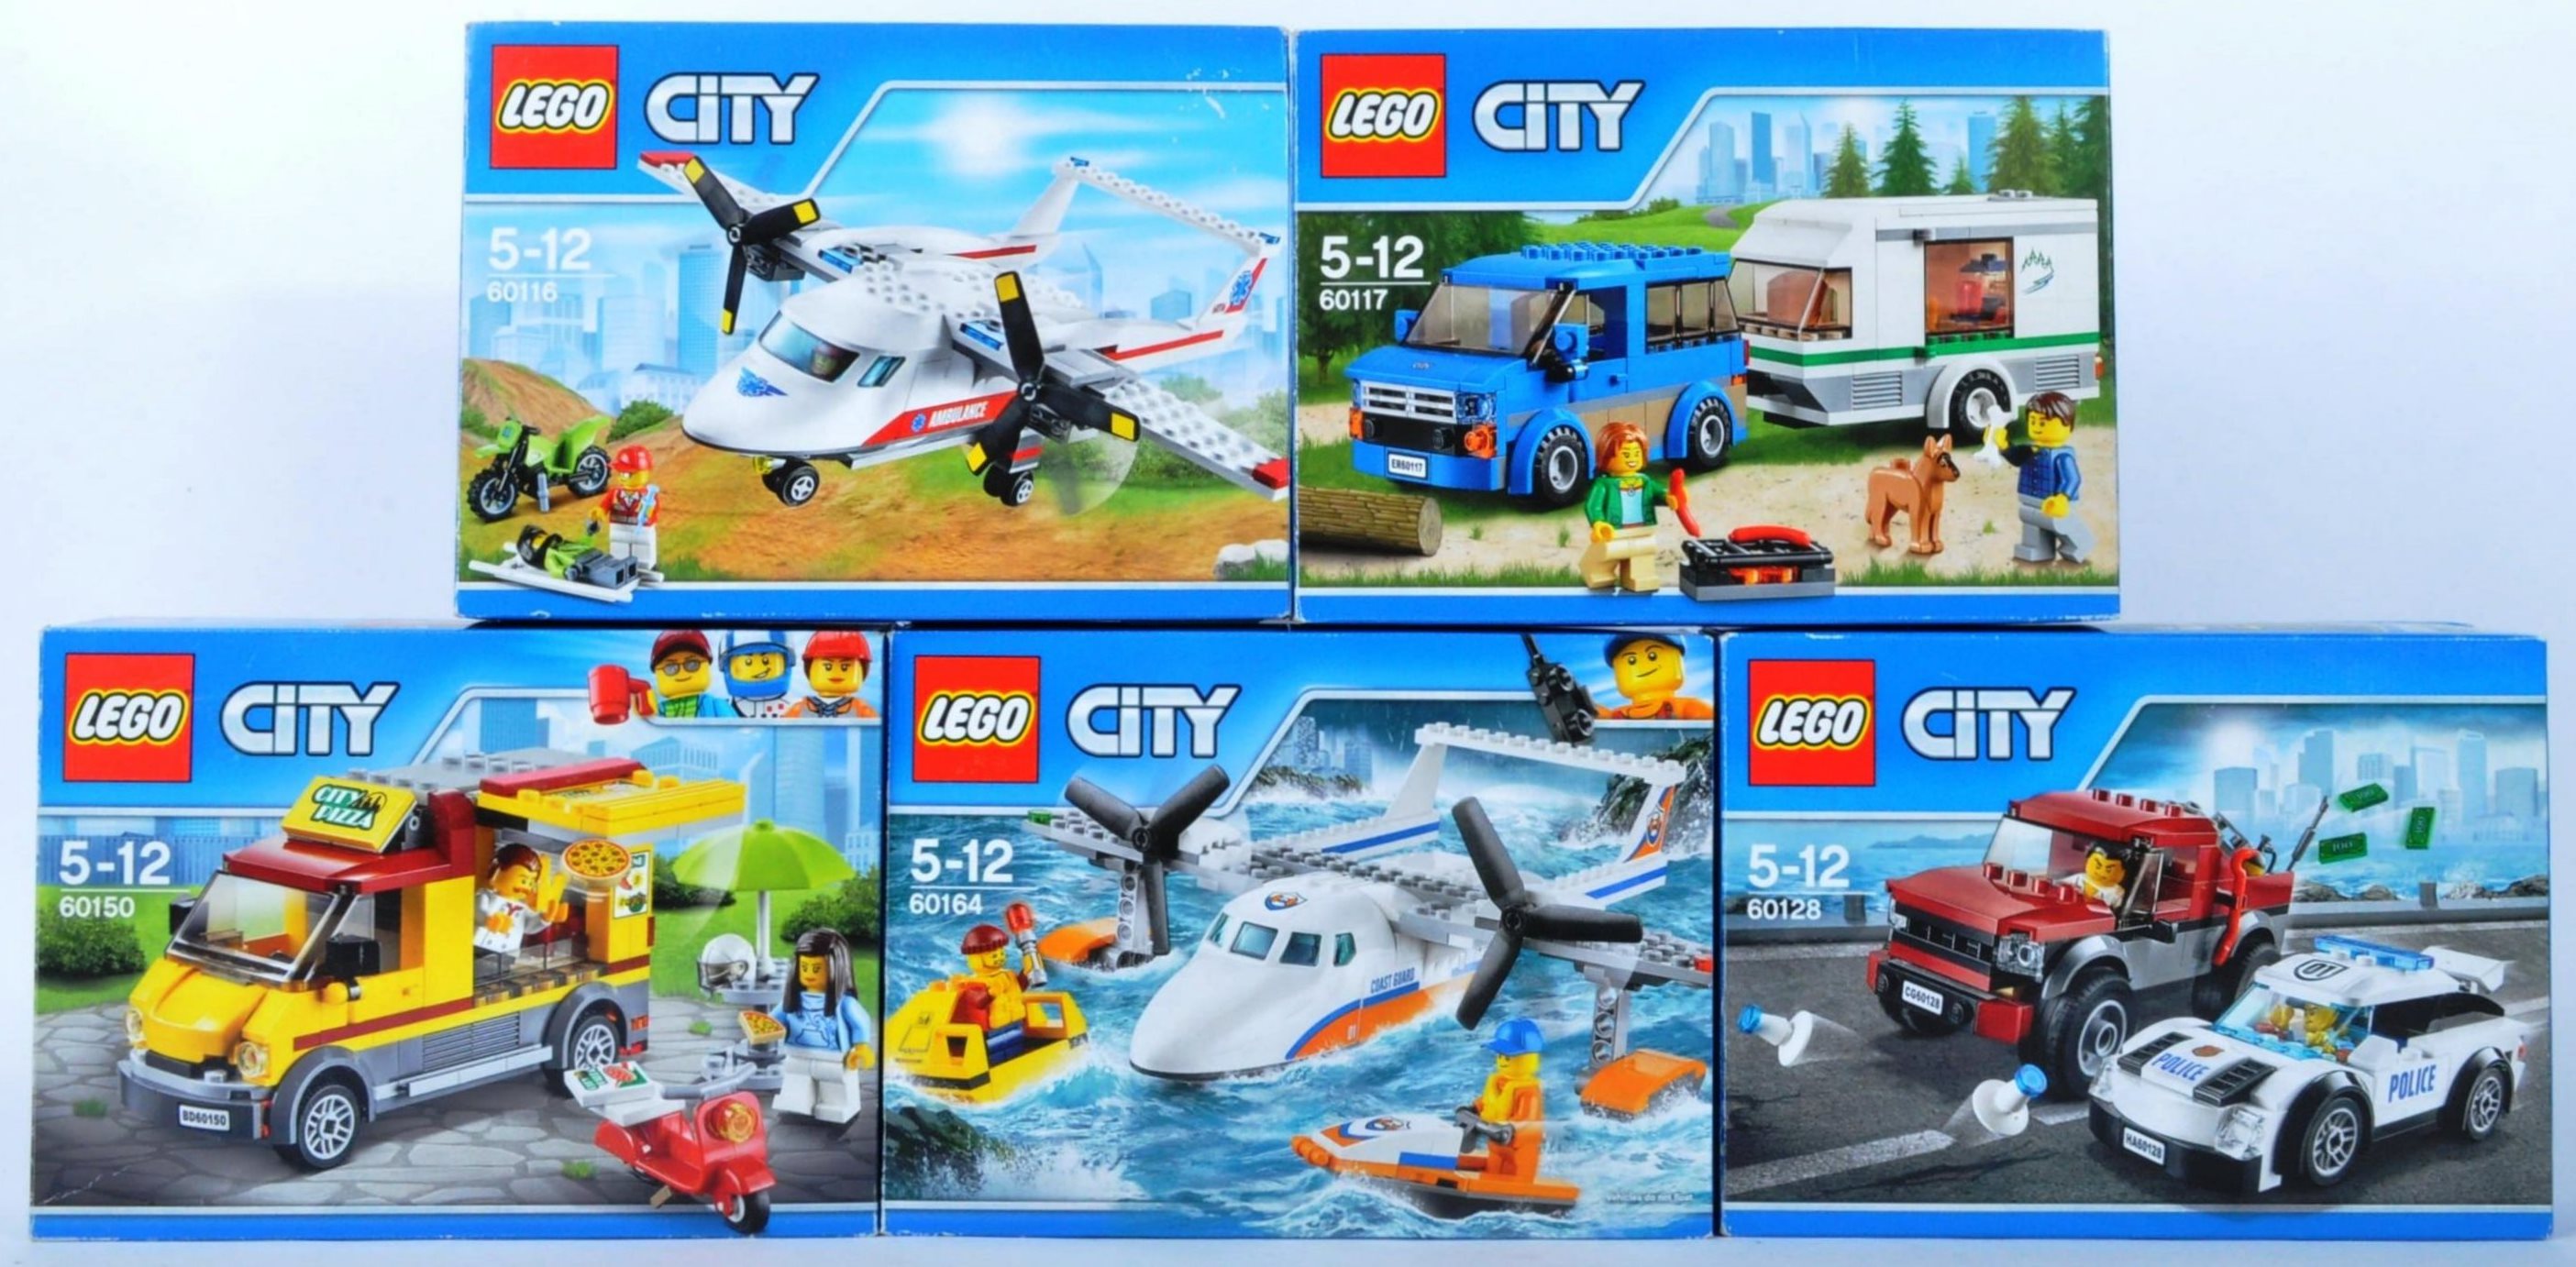 LEGO SETS - LEGO CITY - 60116 -60117 - 60128 - 60150 - 60164